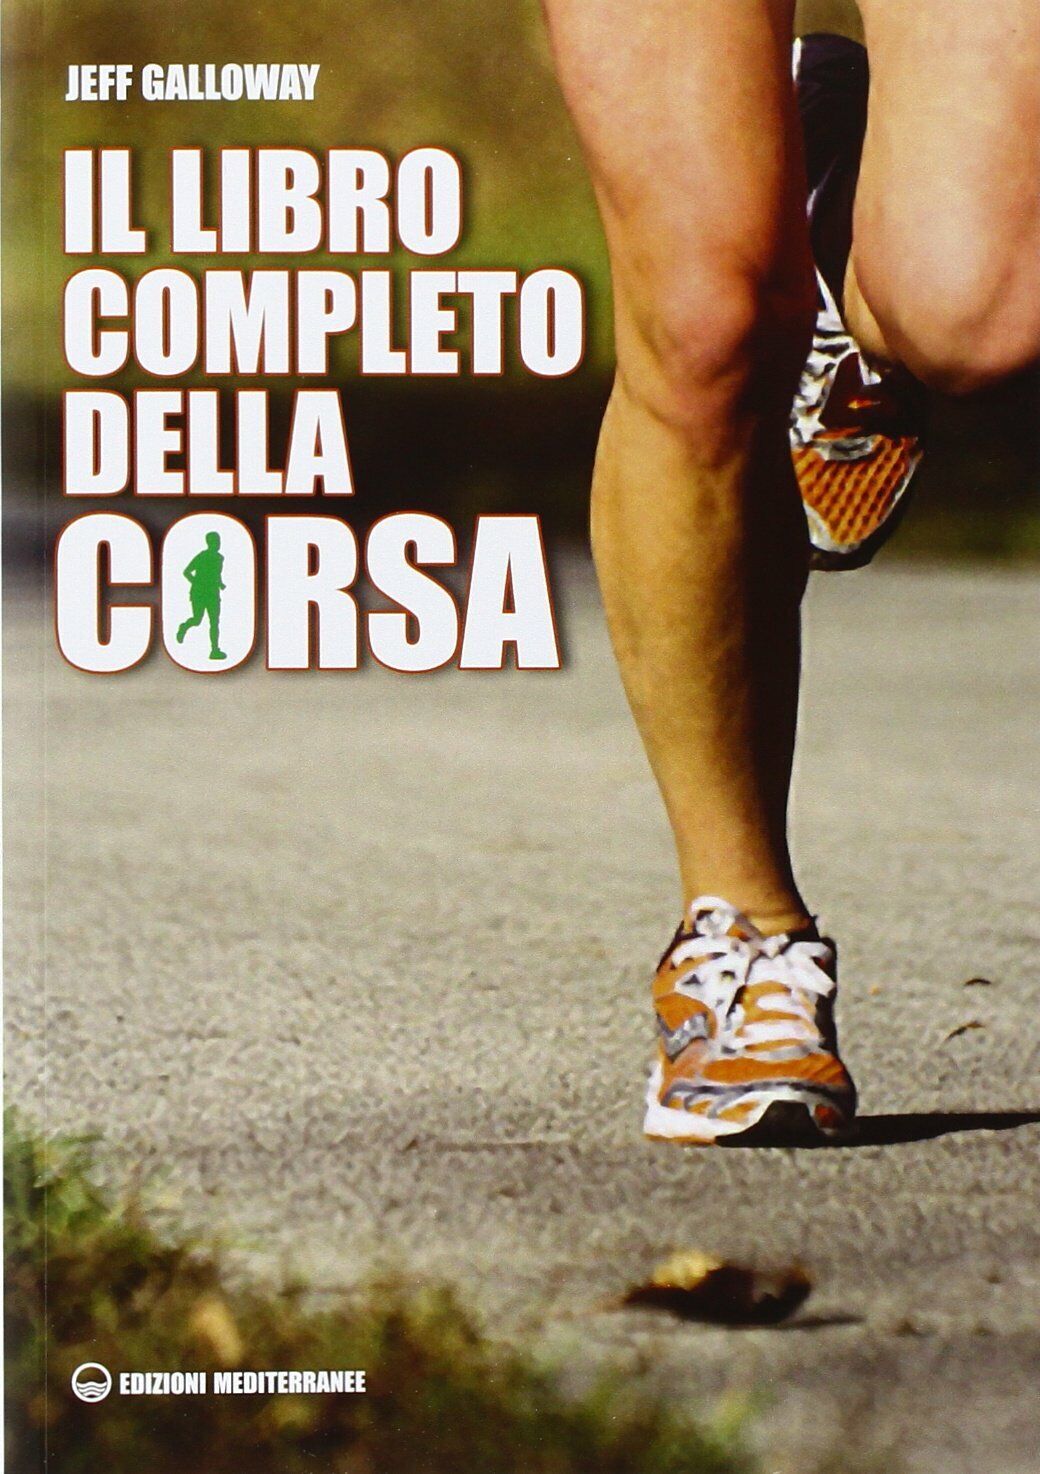 Il libro completo della corsa - Jeff Galloway - Edizioni Mediterranee, 2014 libro usato